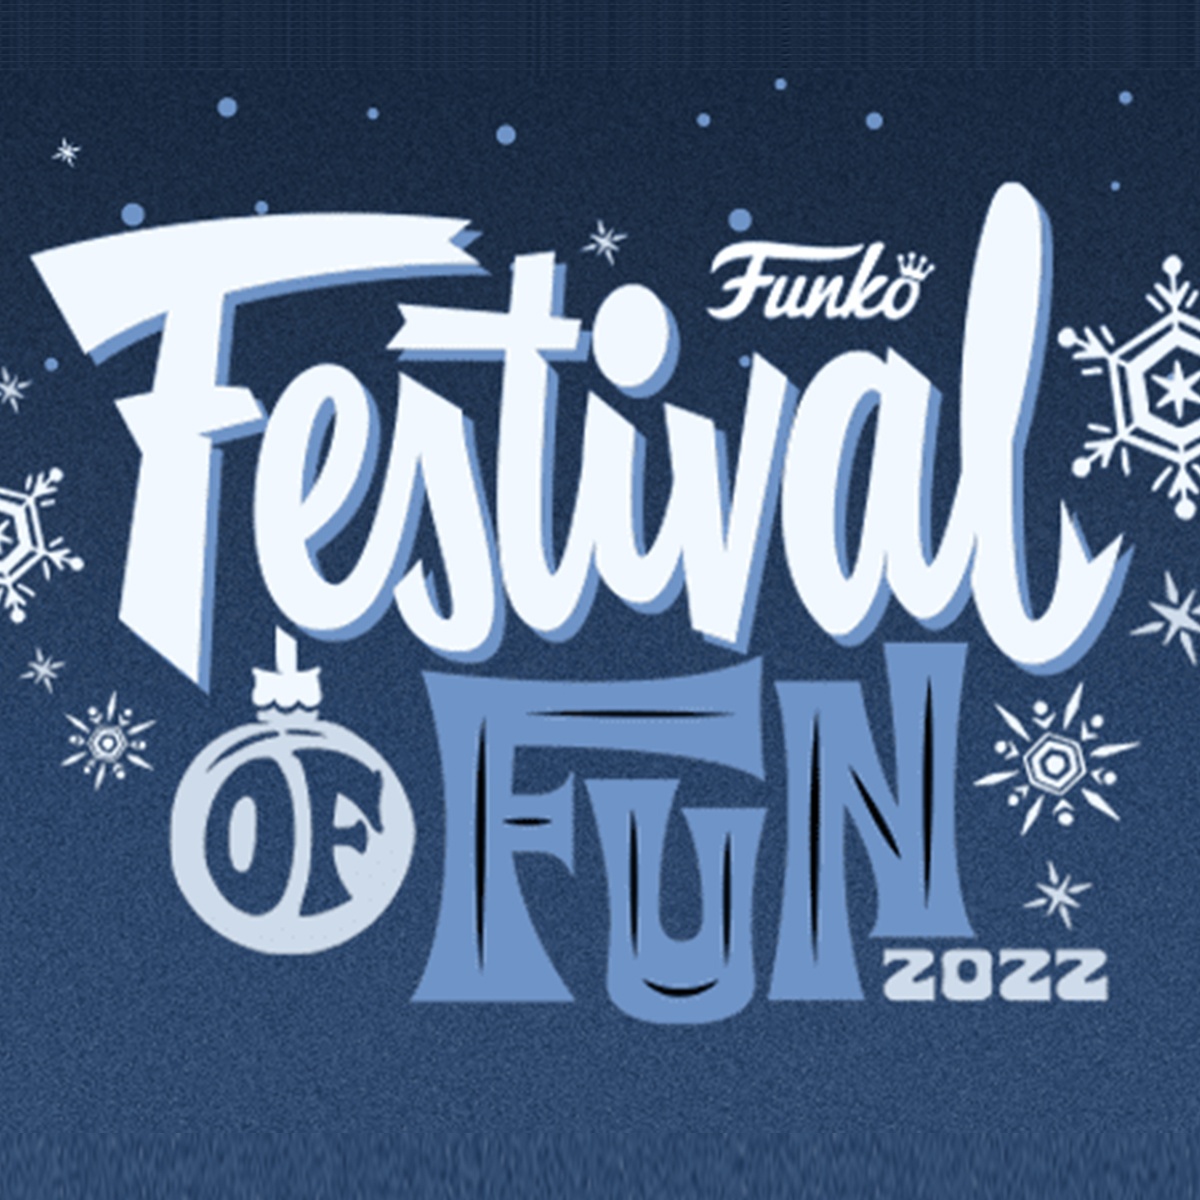 Festival of Fun 2022